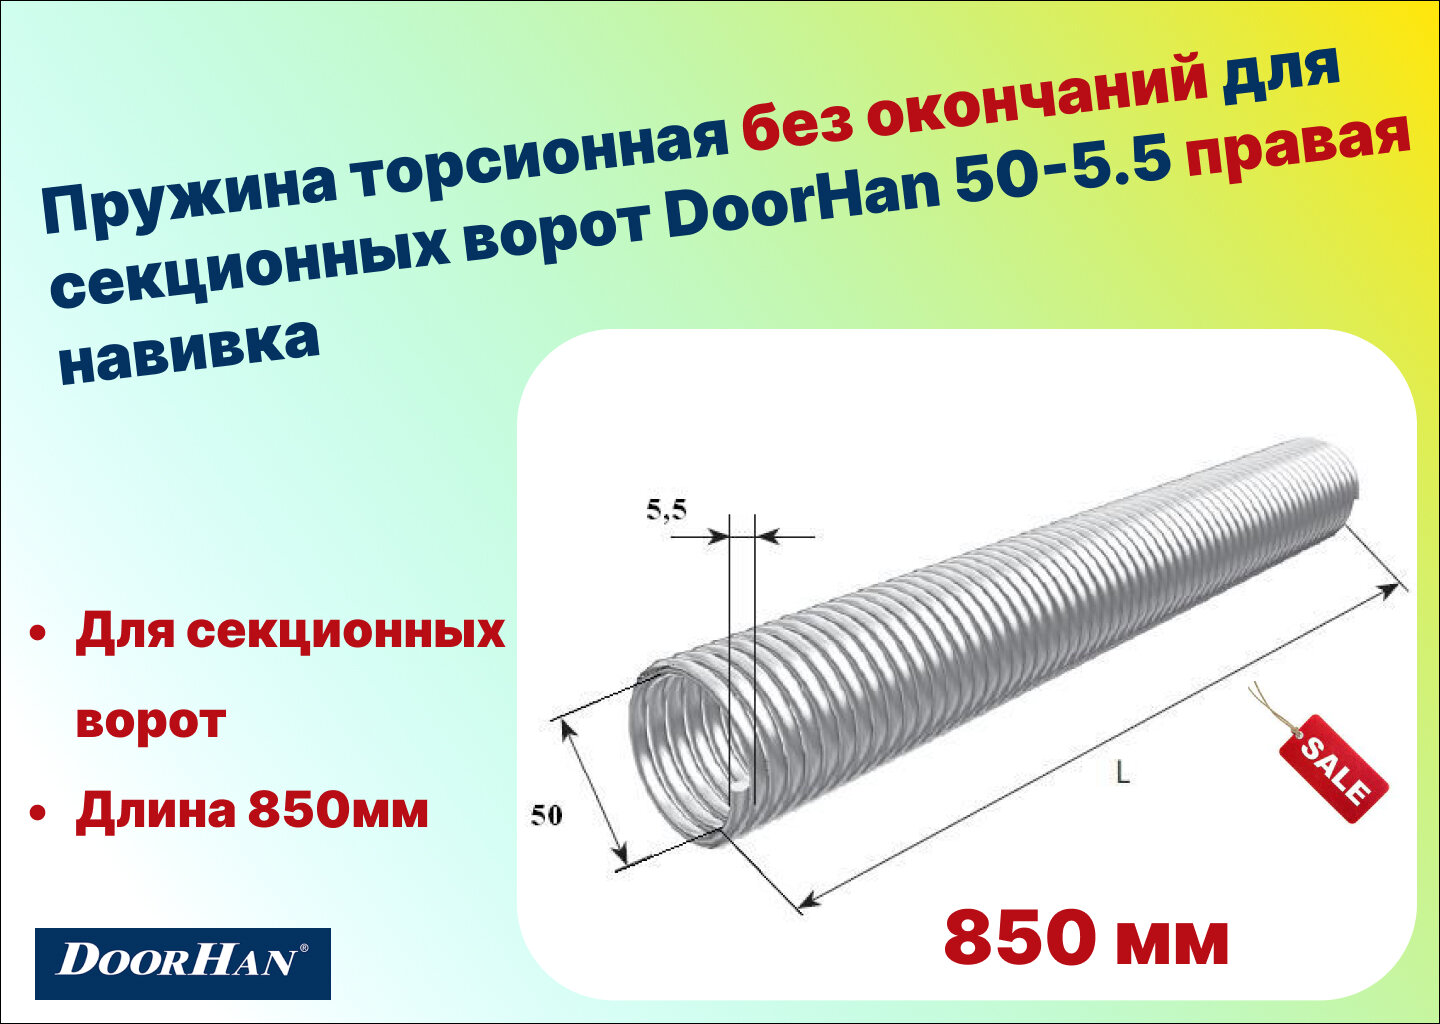 Пружина торсионная без окончаний для секционных ворот DoorHan 50-5.5 правая навивка длина 850 мм (32055/mR/RAL7004 )